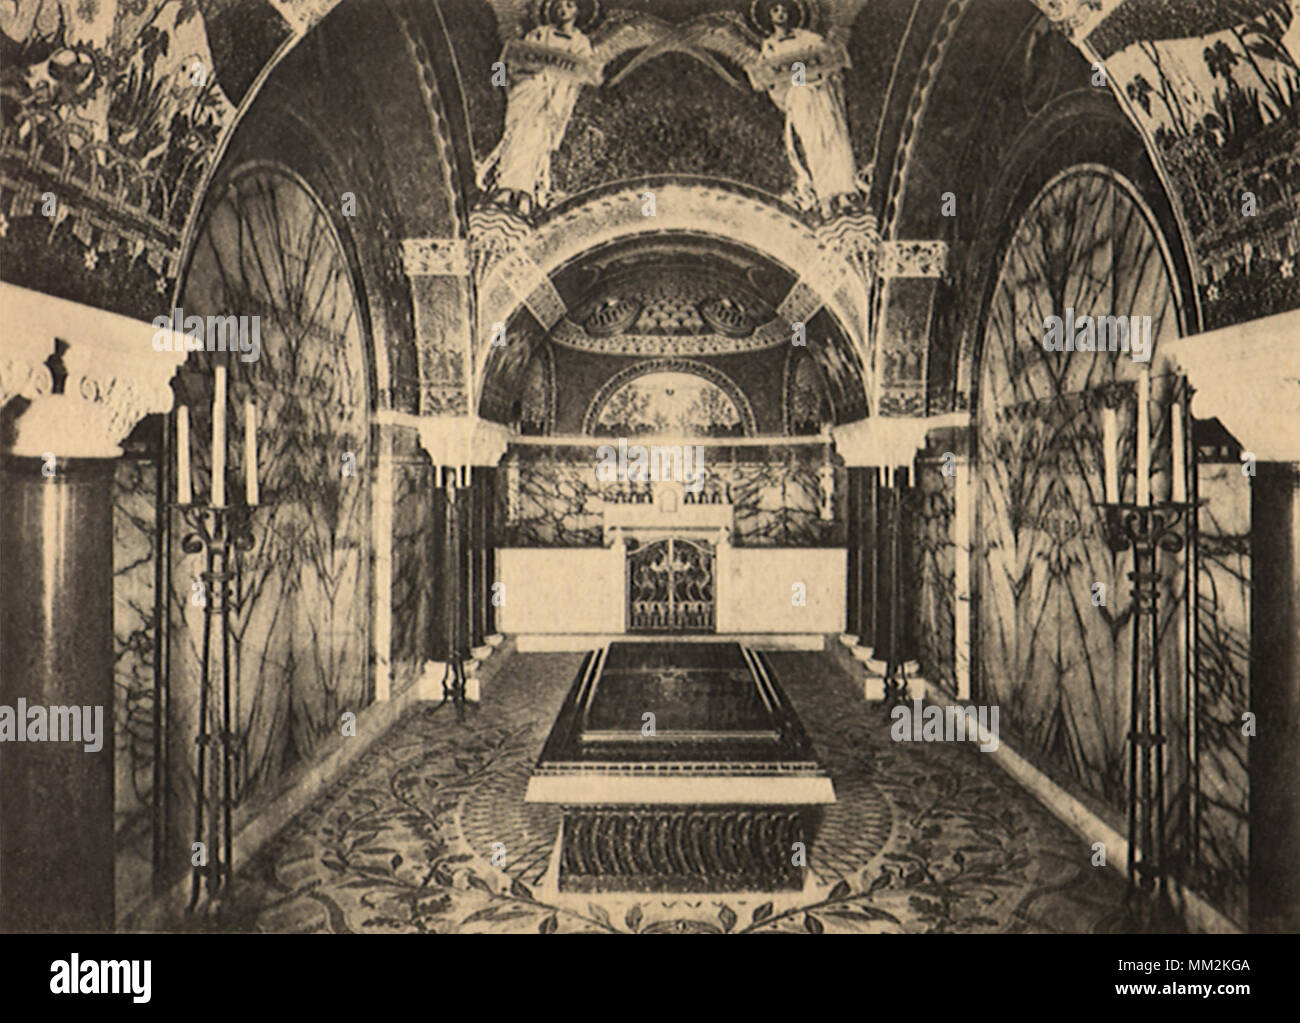 Tomb of Pasteur at Institute. Paris. 1910 Stock Photo